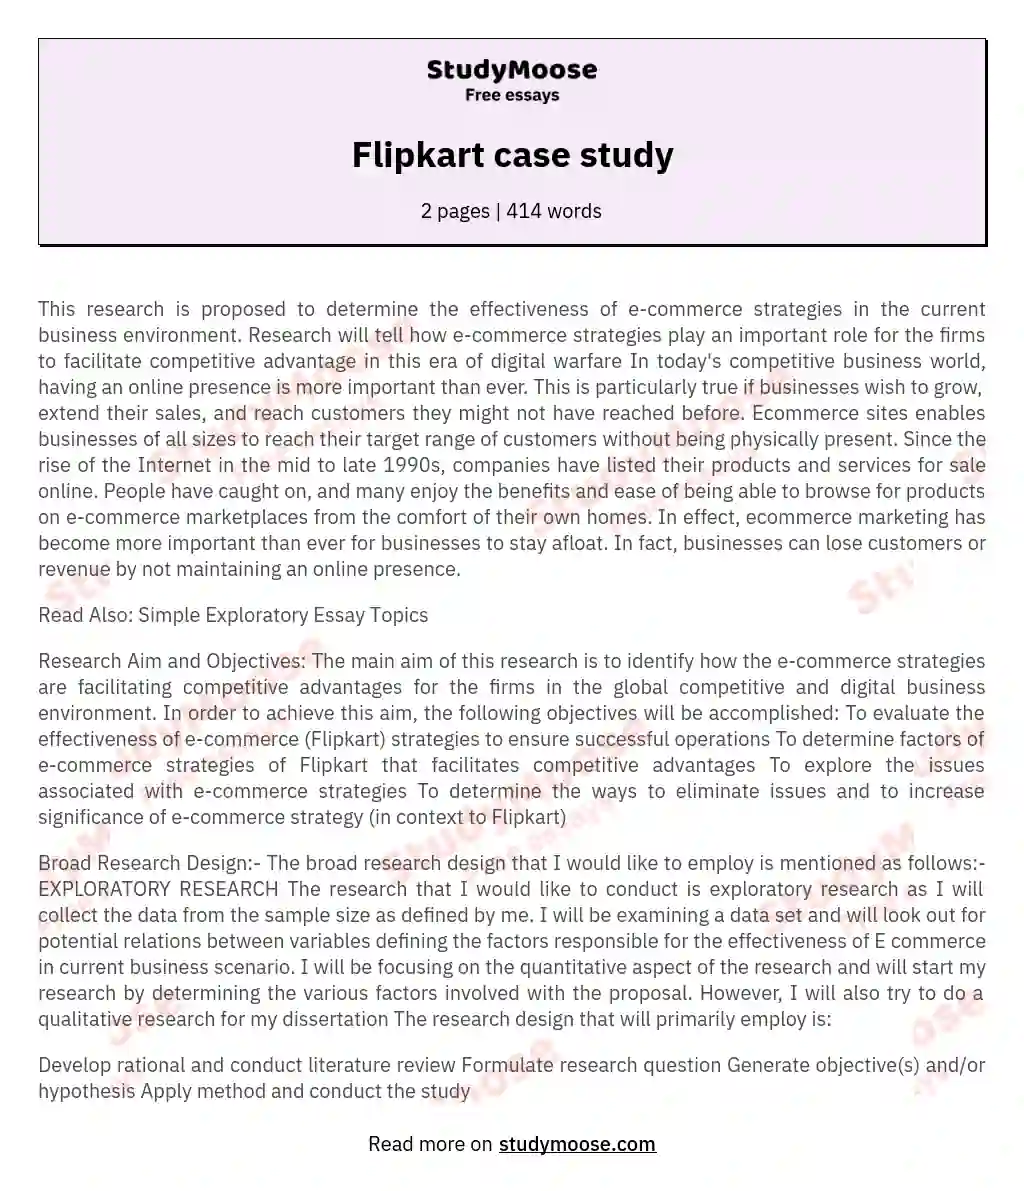 Flipkart case study essay